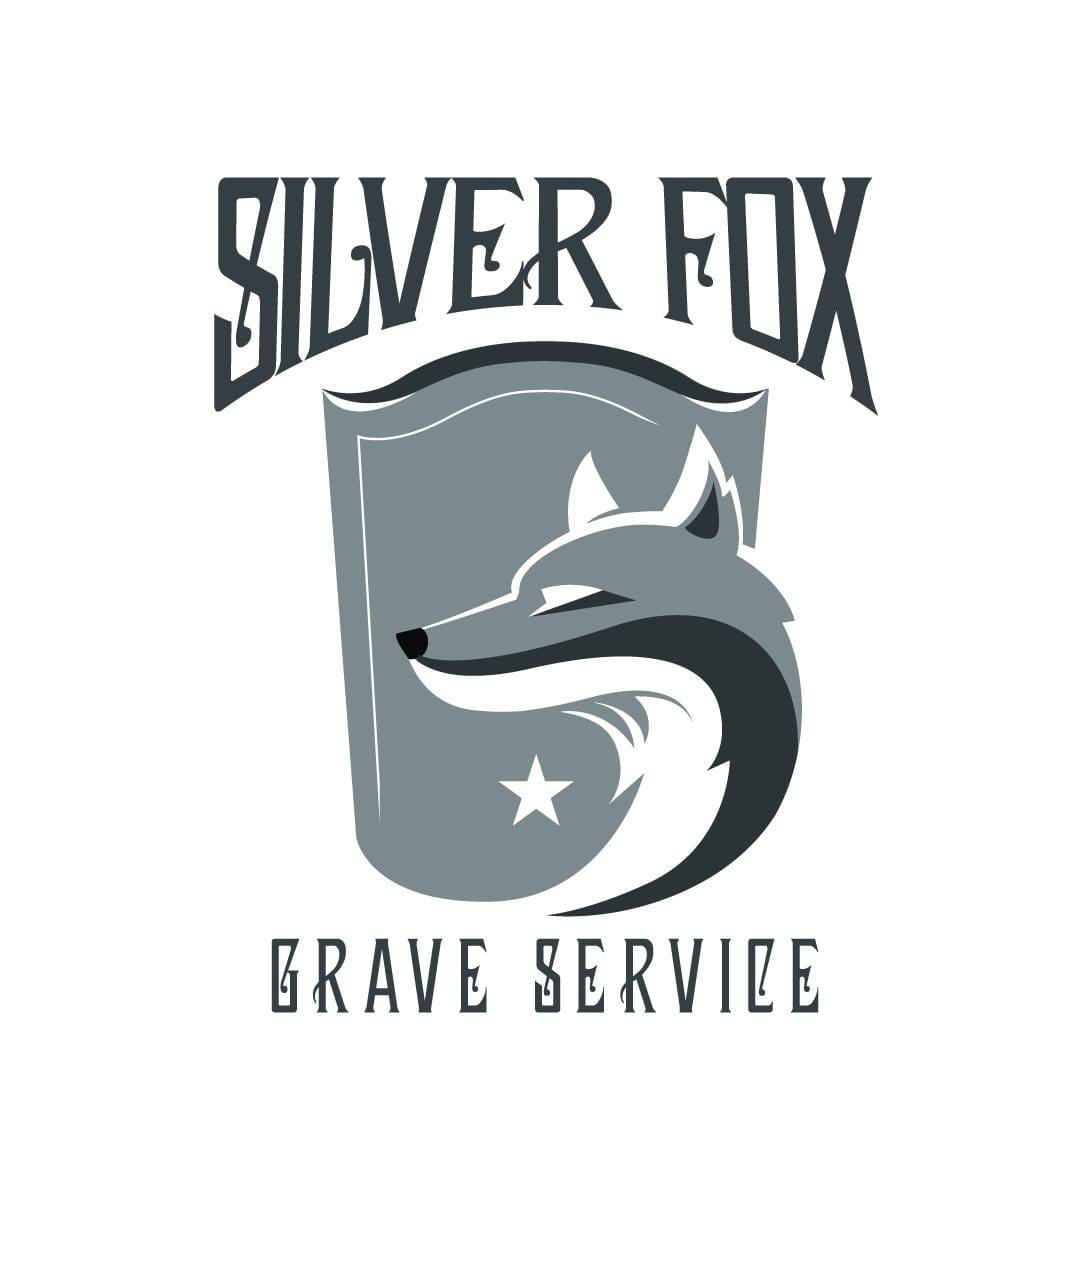 Silver Fox Grave Service